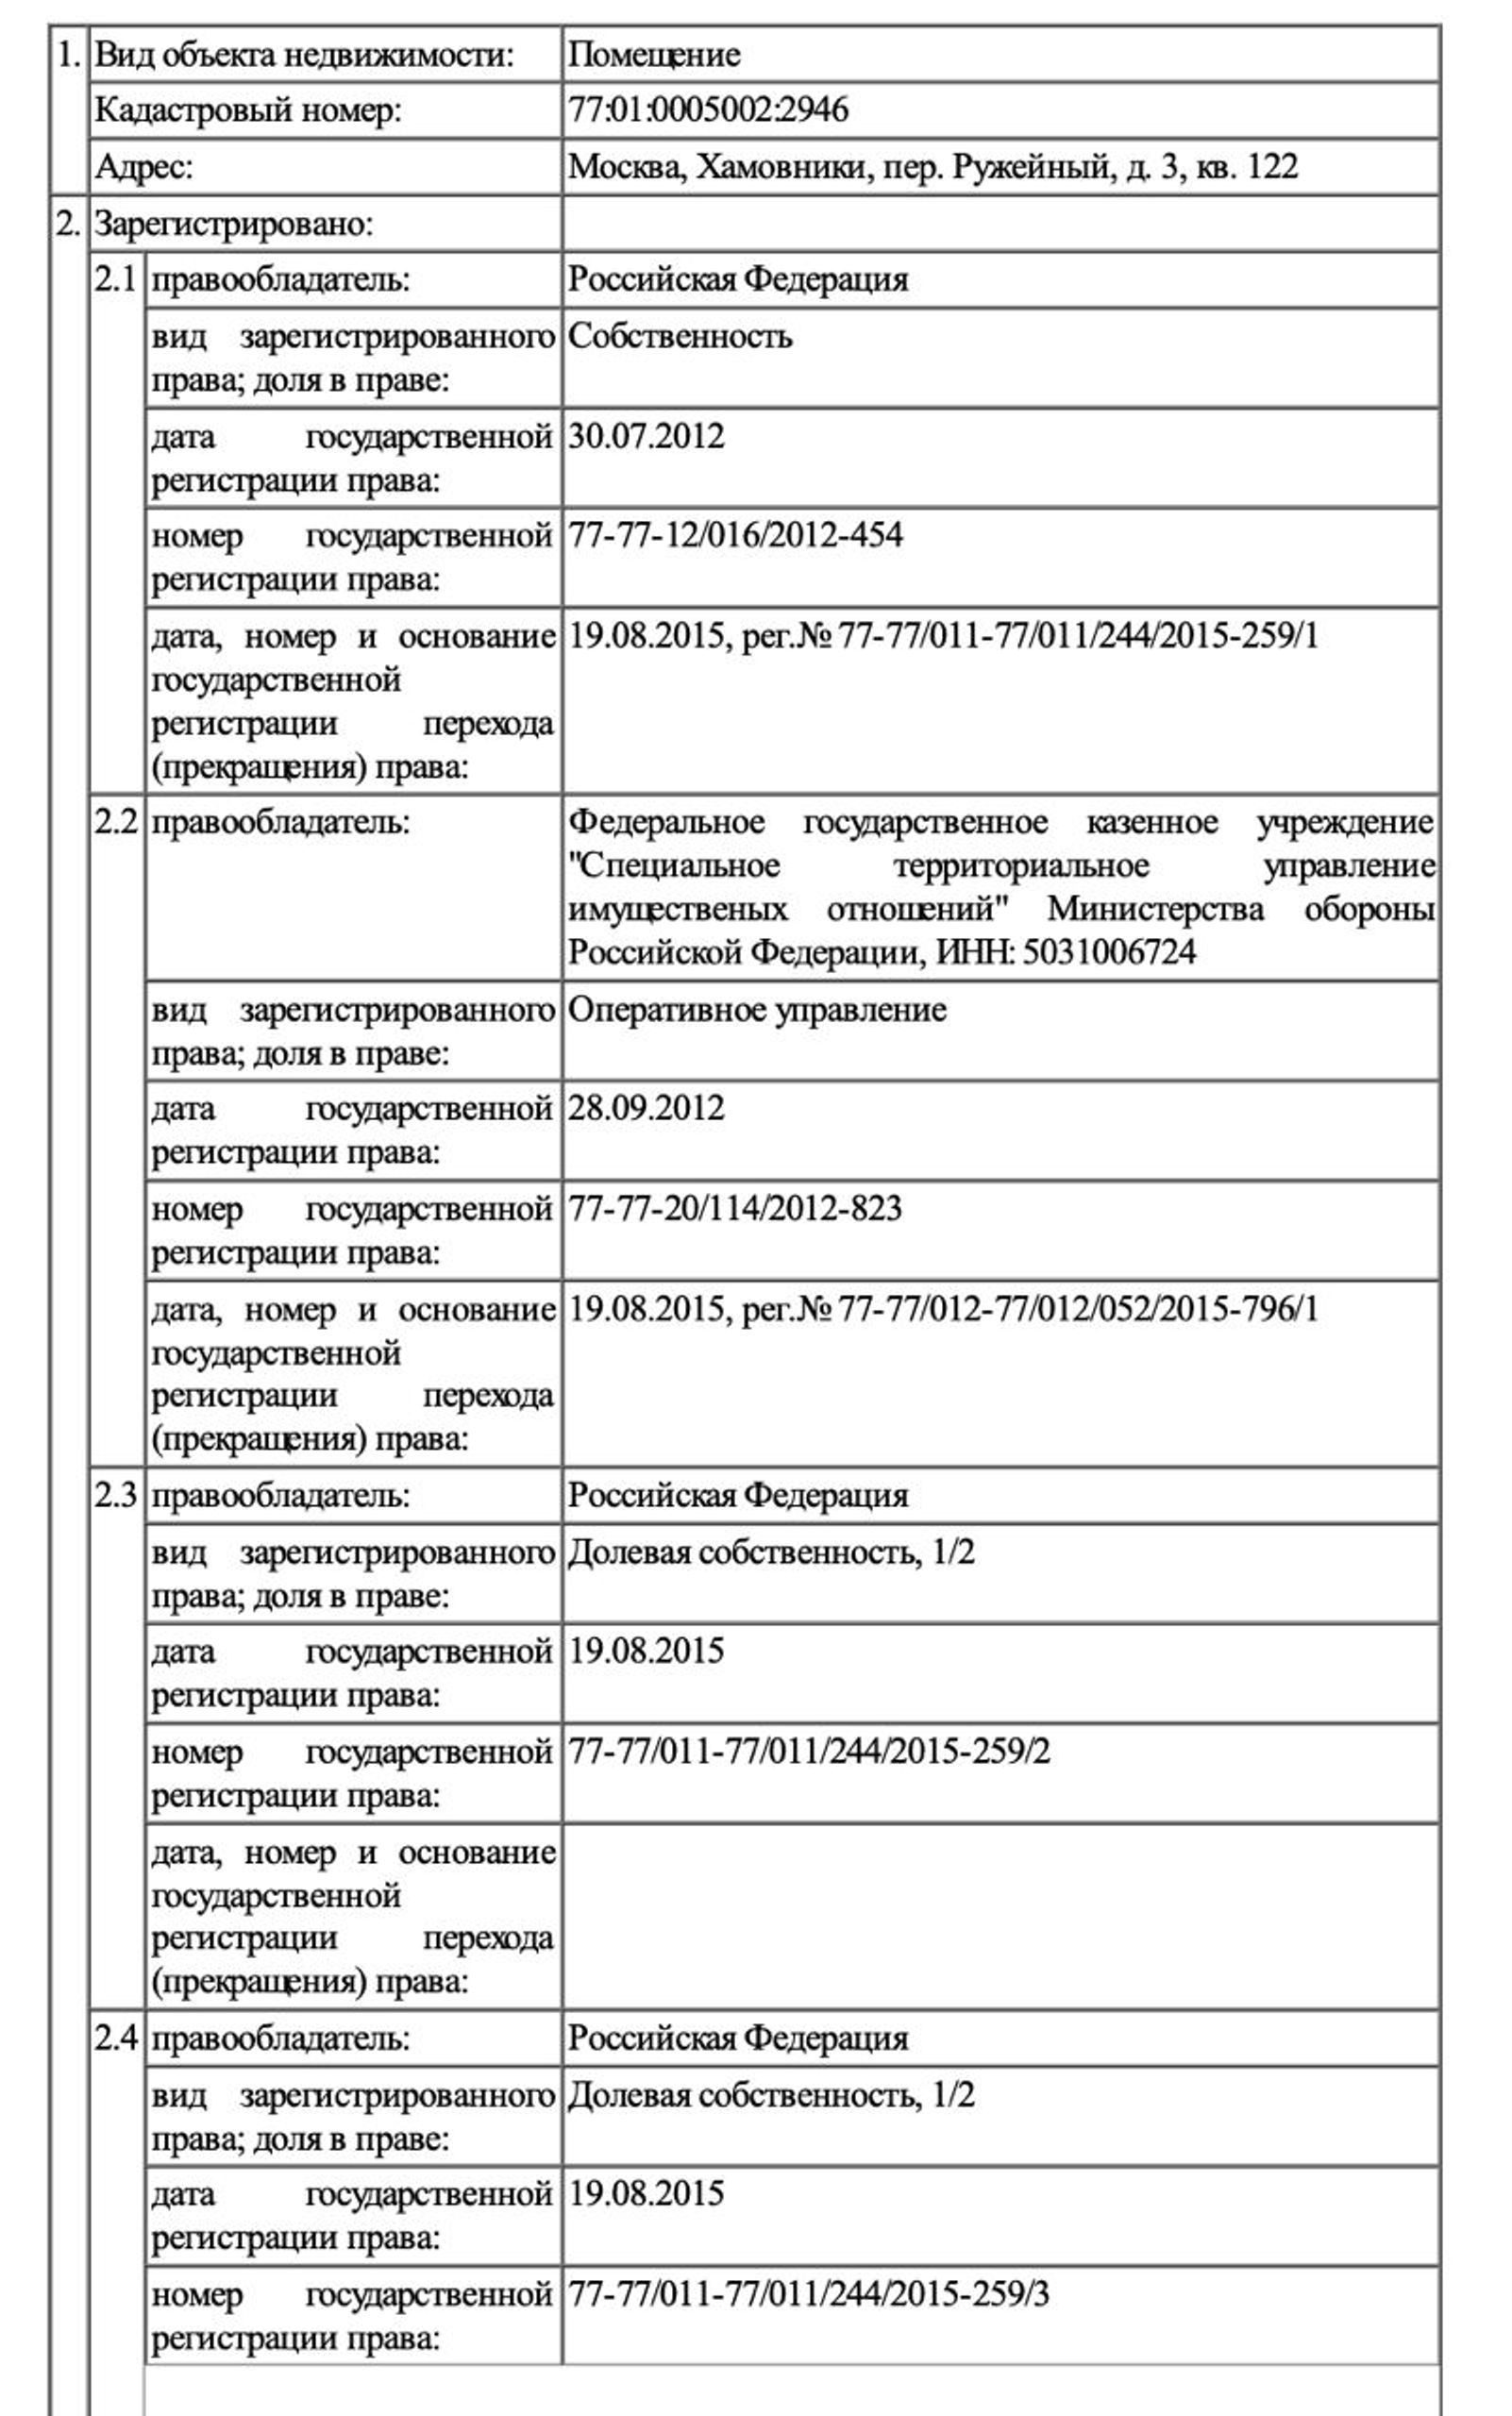 Данные о недвижимости представителя Минобороны Конашенкова засекретили